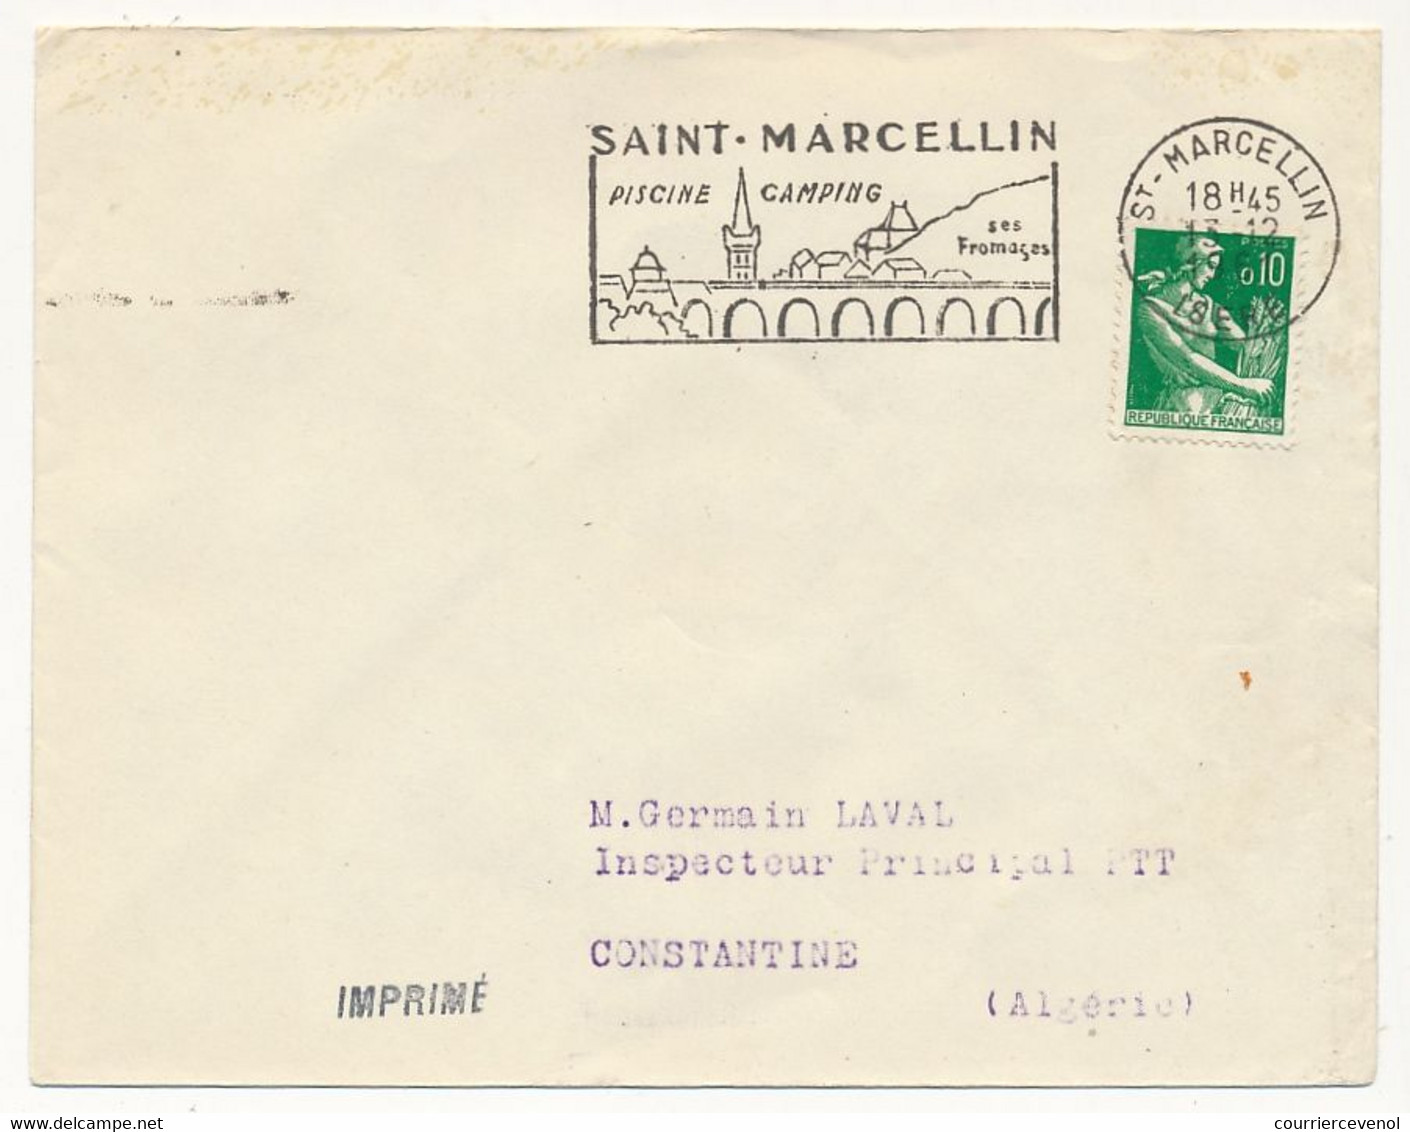 FRANCE - Env Affr. 0,10 Moissonneuse - OMEC St Marcellin / Piscine Camping - 1962 - Maschinenstempel (Werbestempel)